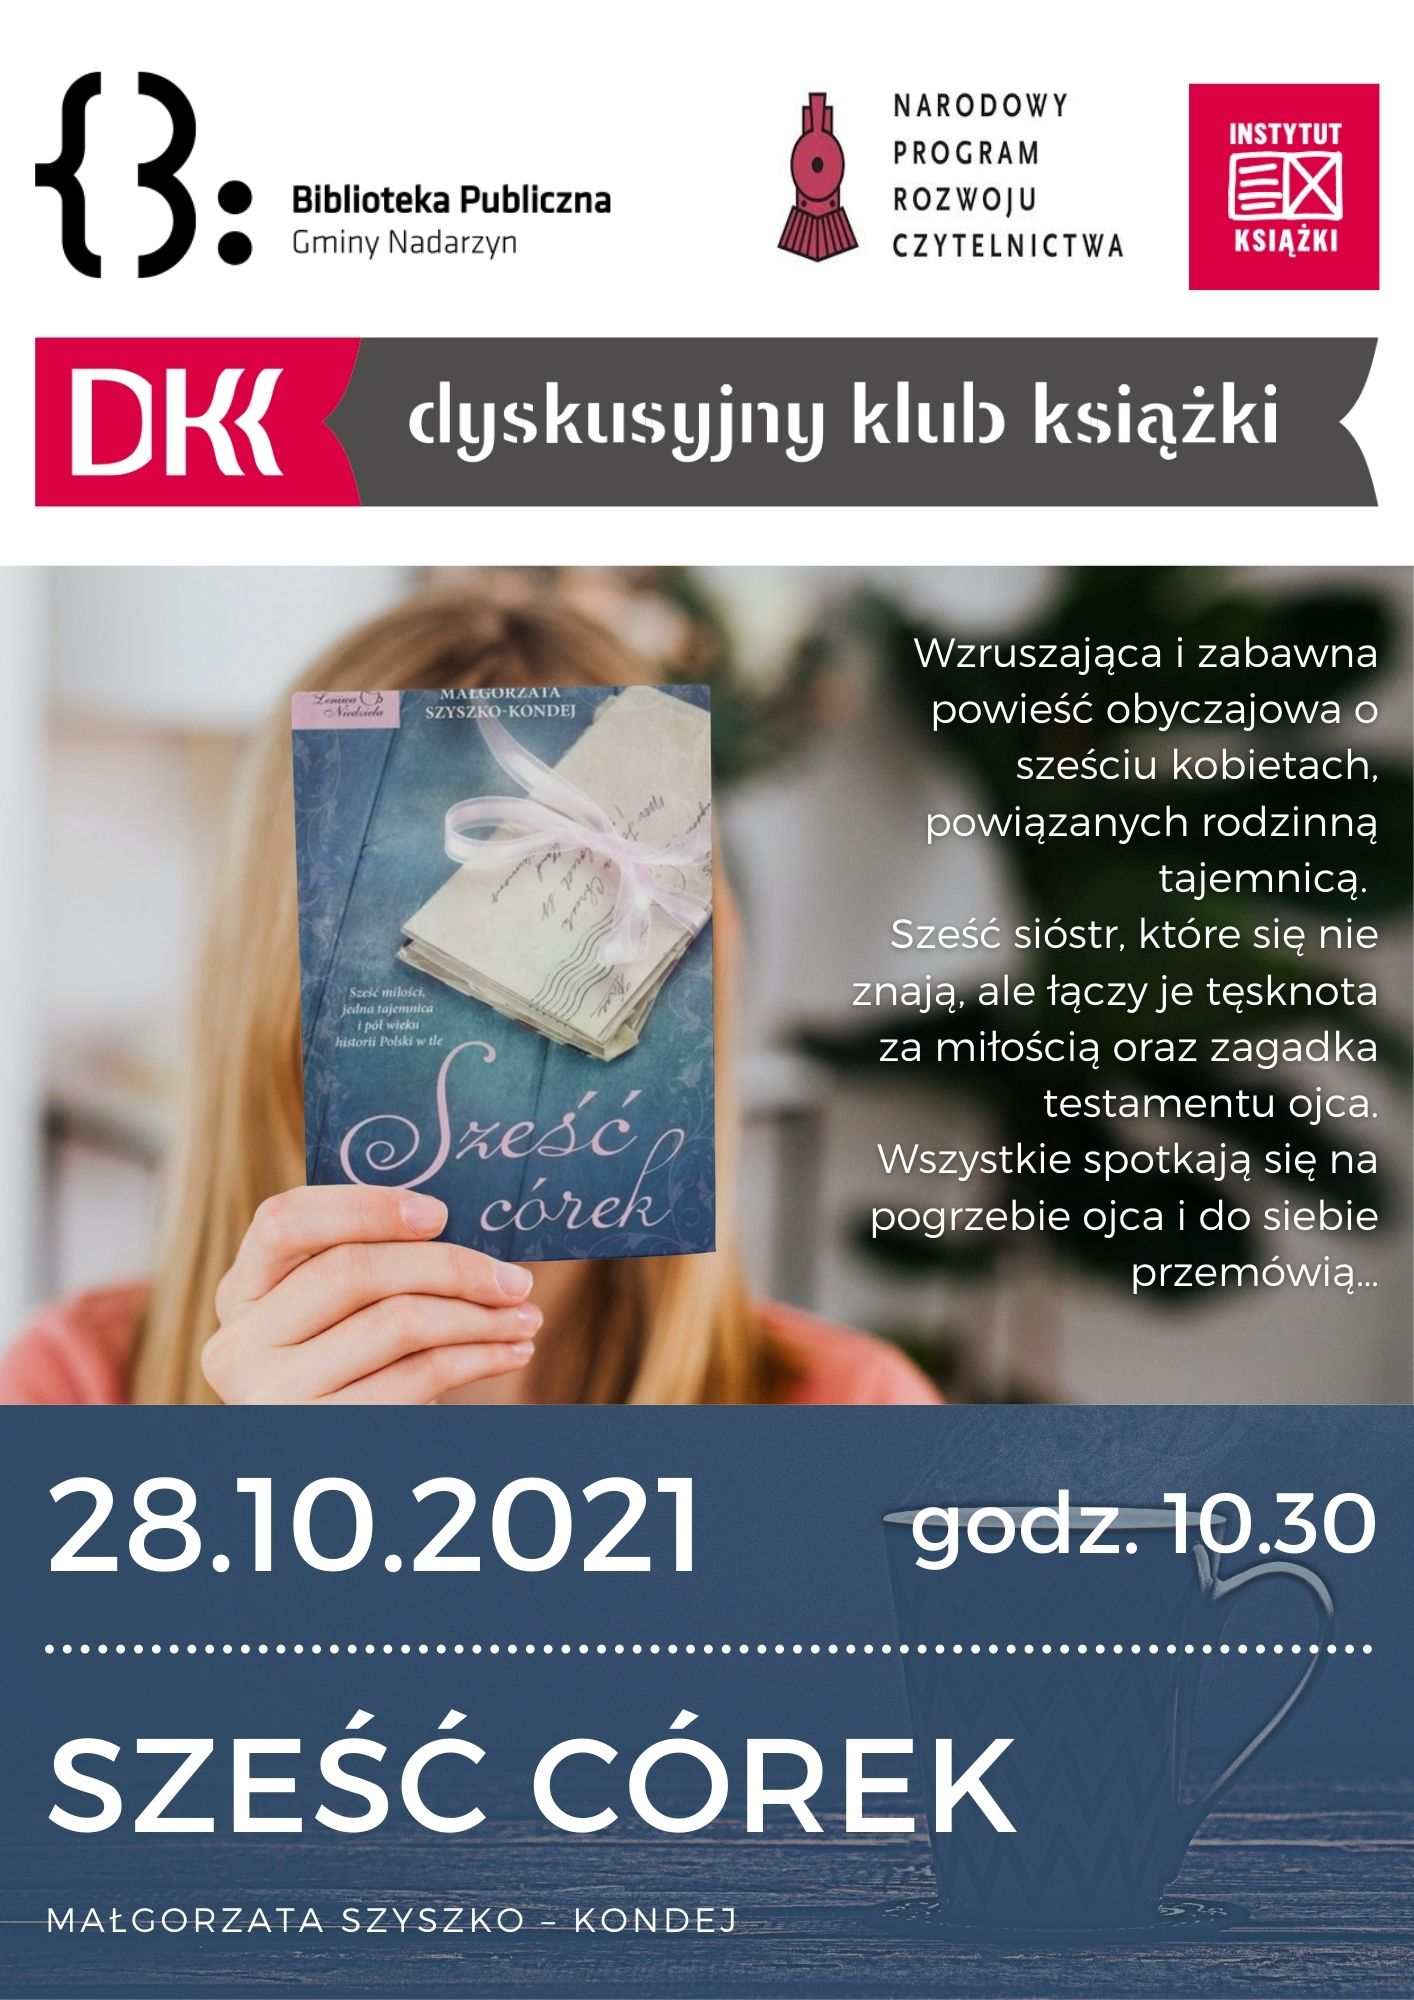 28.10.2021 o godz. 10.30 spotkanie Dyskusyjnego Klubu Książki. Sześć córek - Małgorzata Szyszko-Kondej